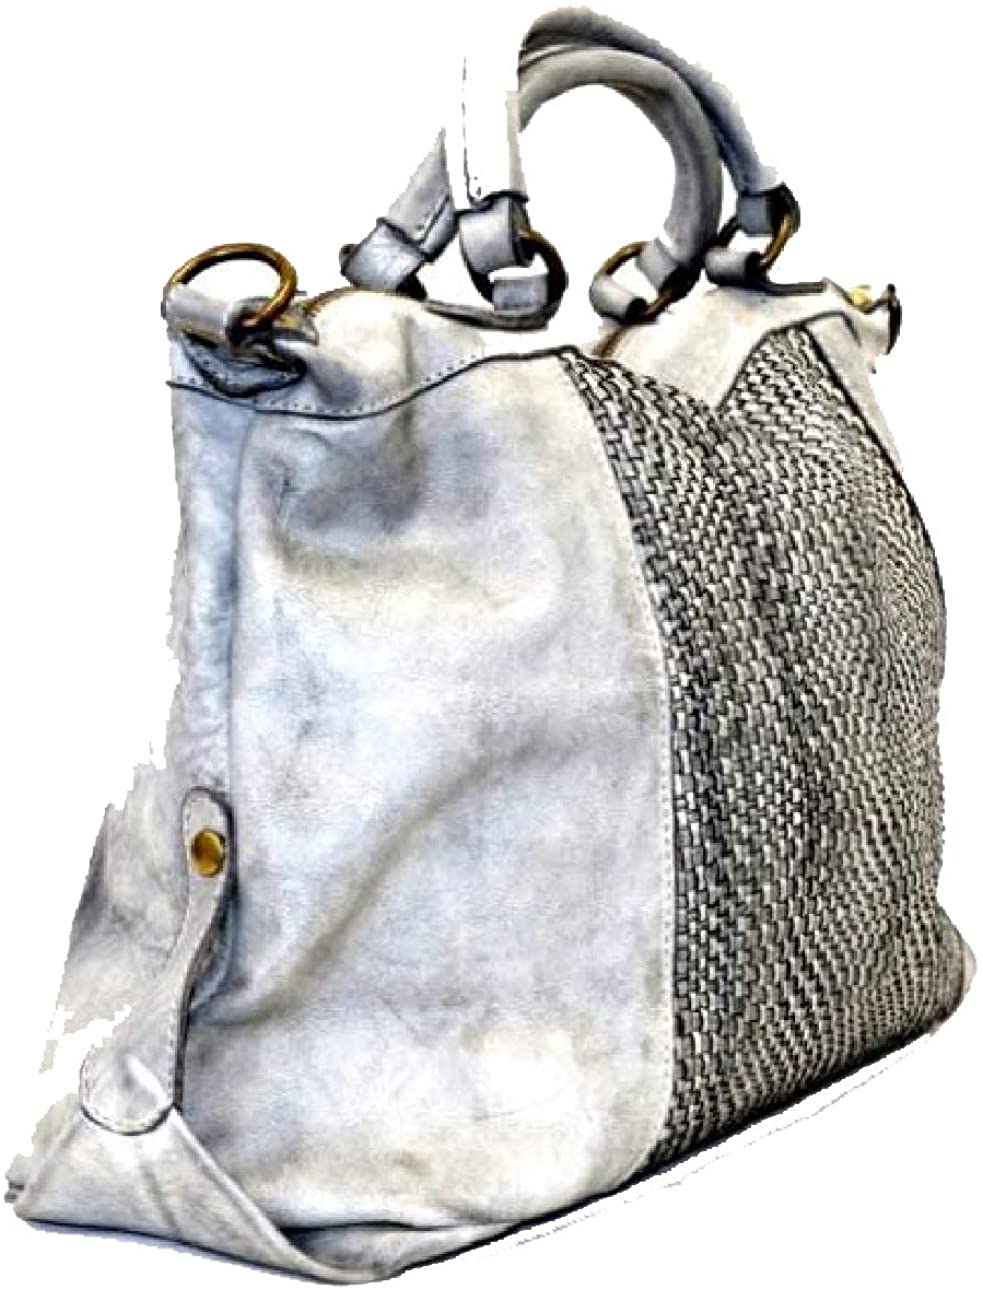 BZNA Bag Emely gelb Italy Designer Damen Ledertasche Handtasche Schultertasche Tasche Leder Beutel Neu